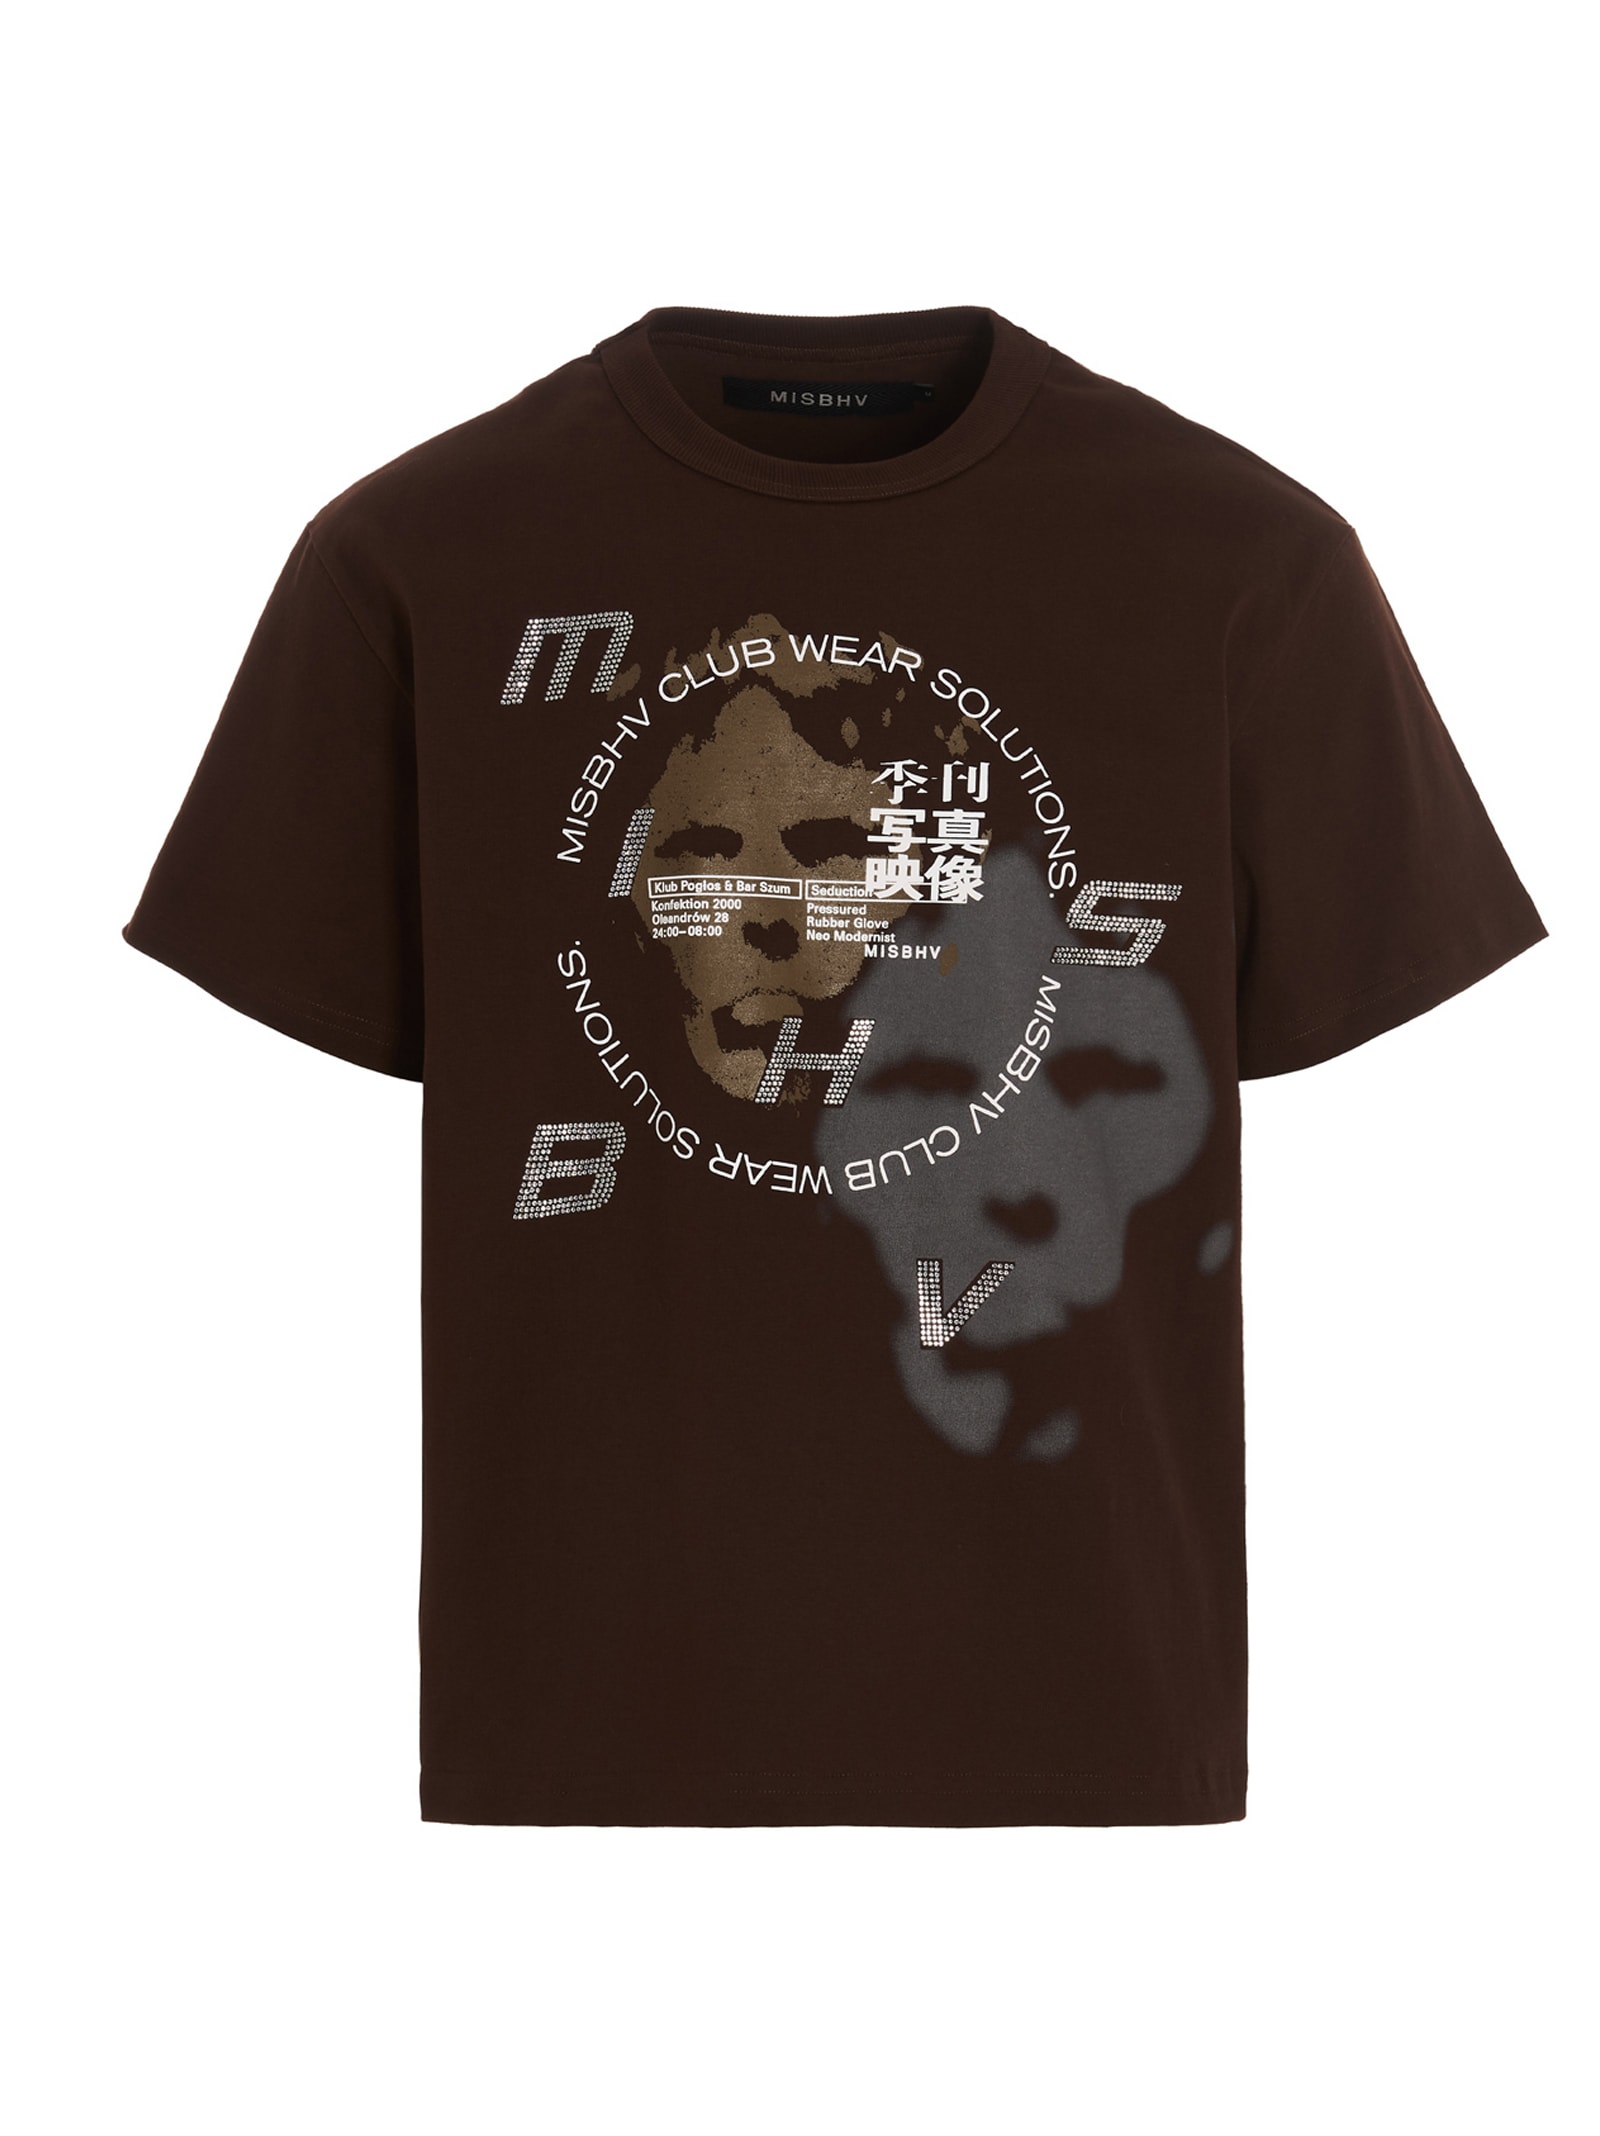 Misbhv sound System T-shirt